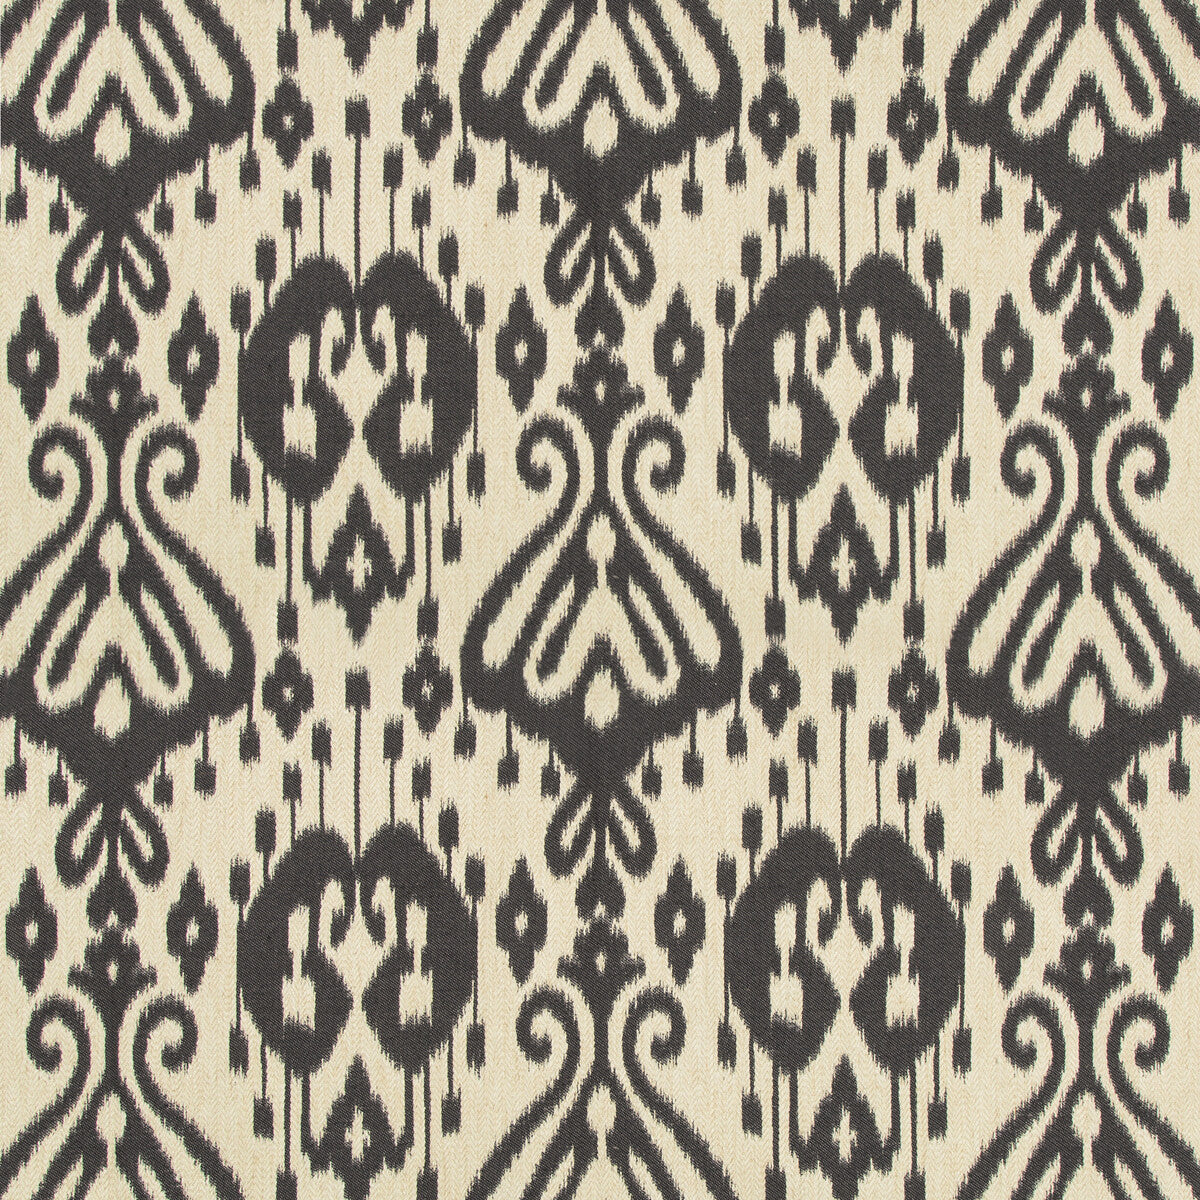 Kravet Design fabric in 35698-816 color - pattern 35698.816.0 - by Kravet Design